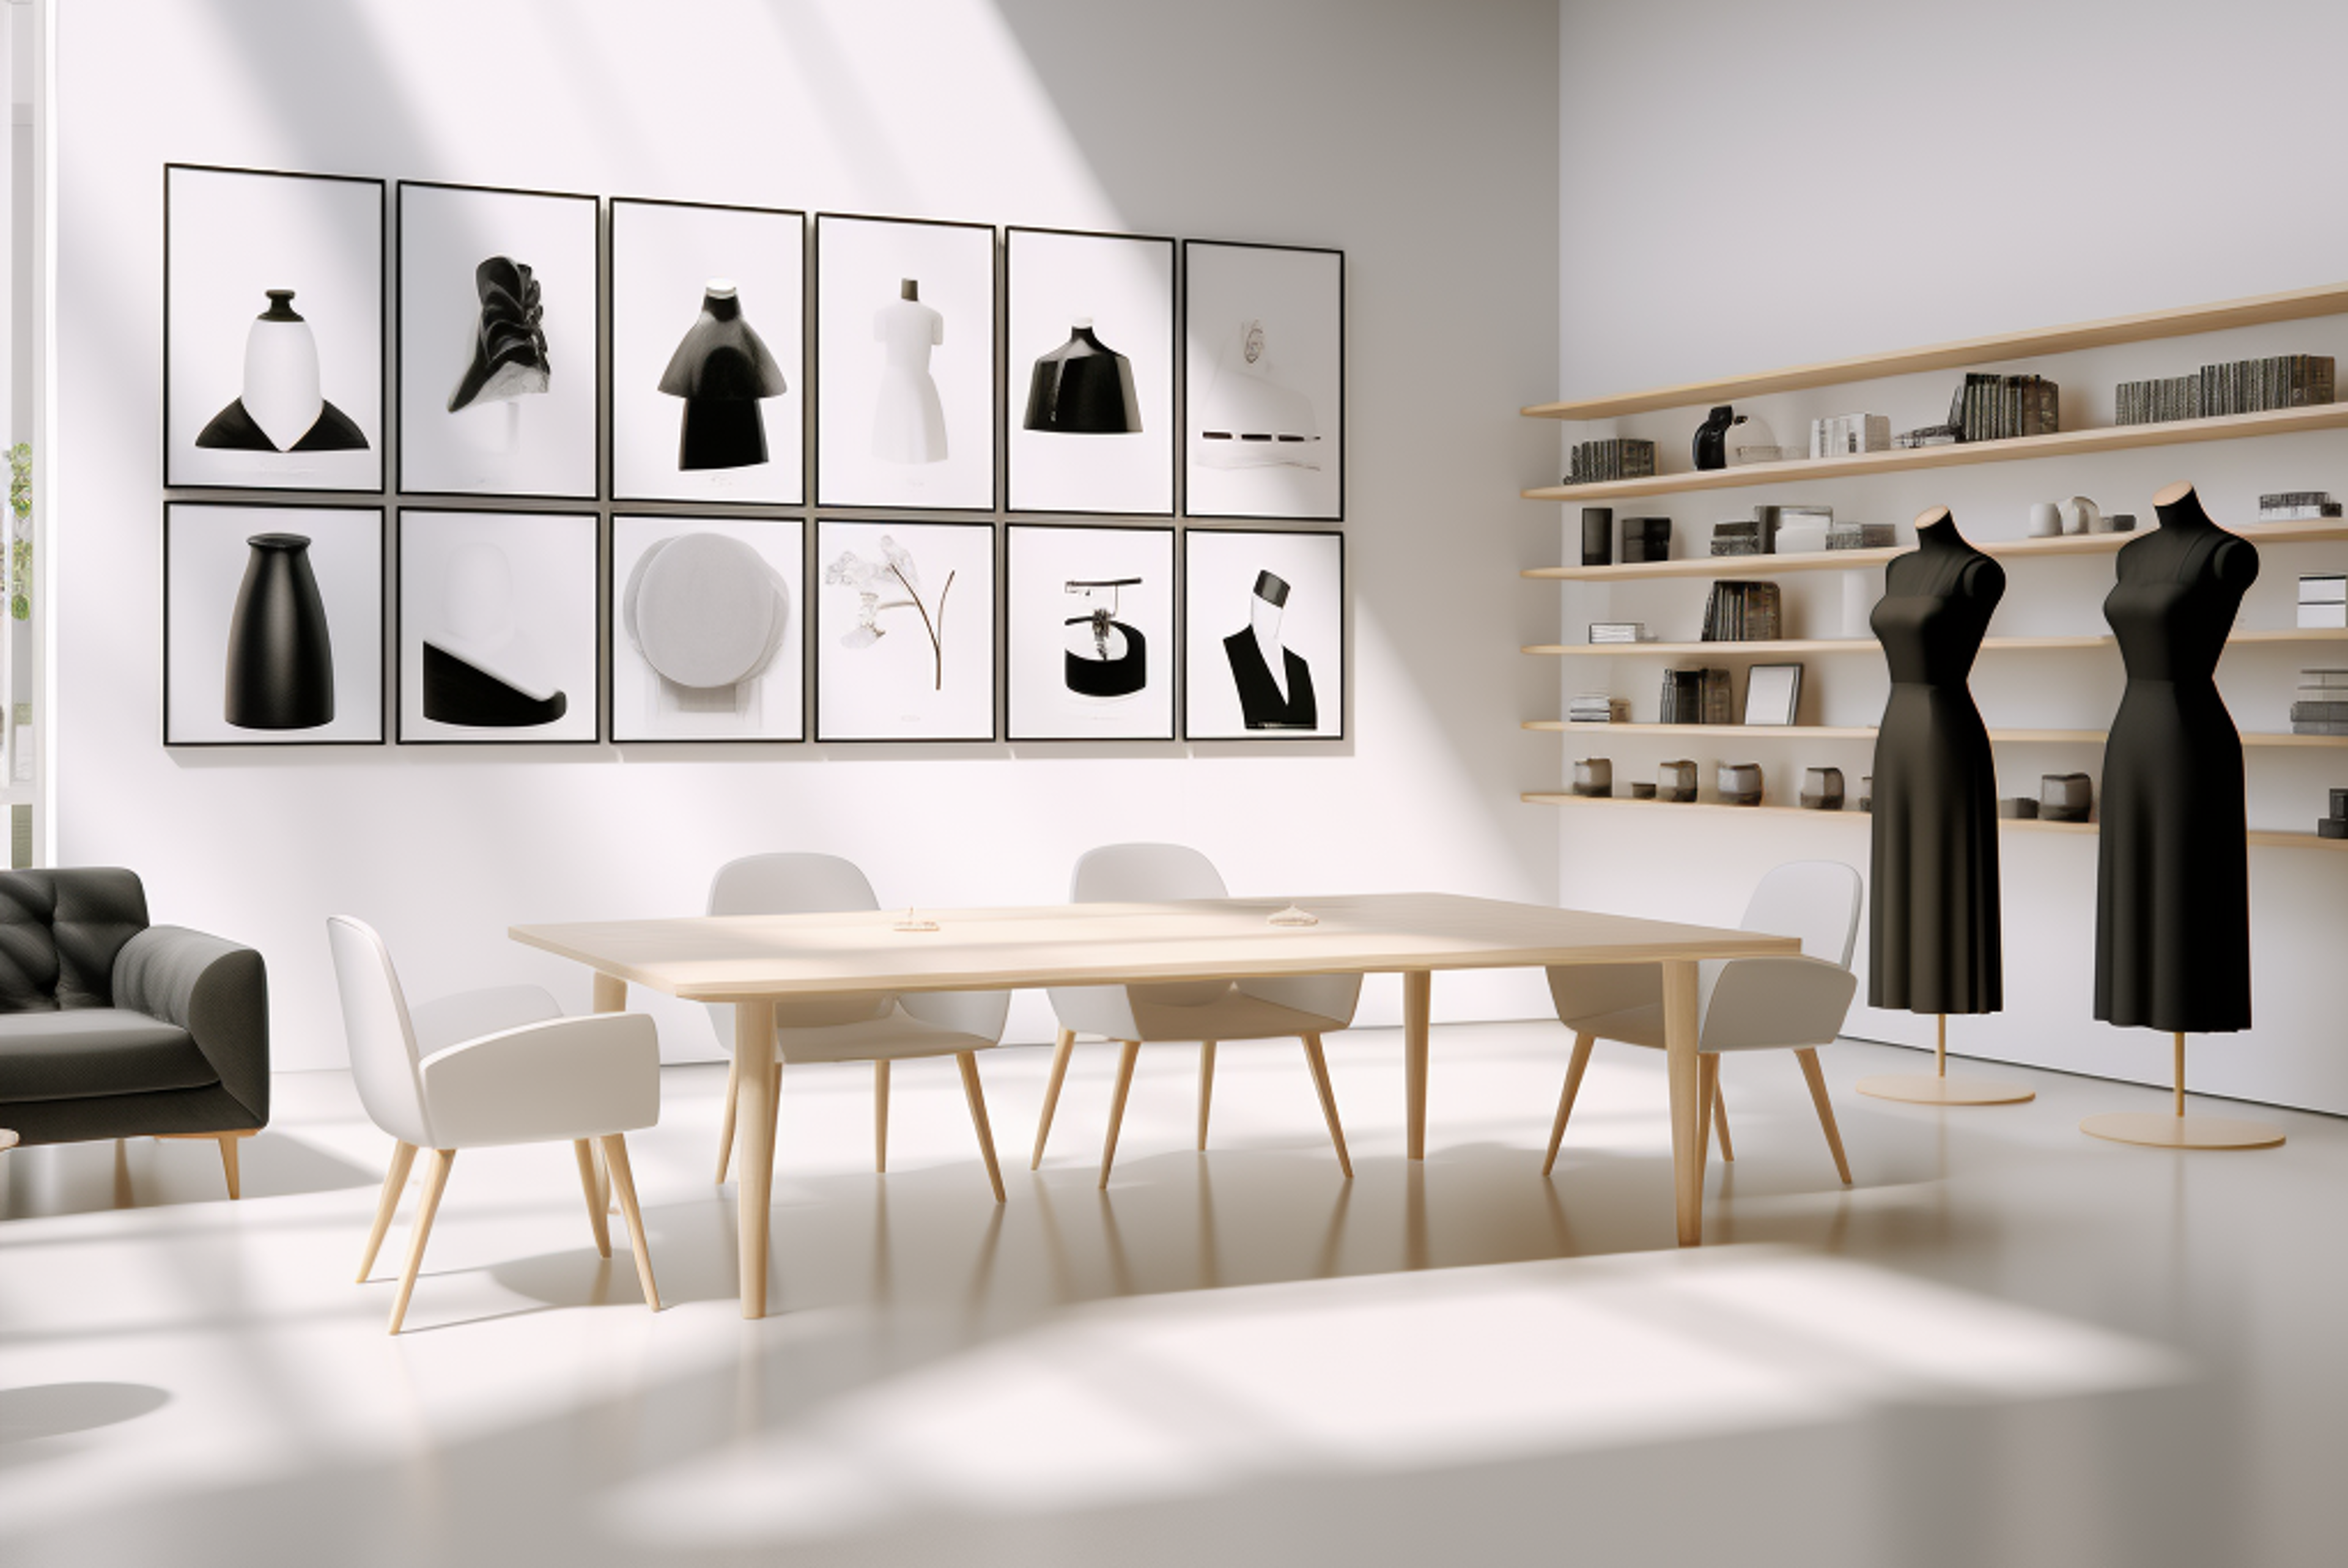 Un espacio de estudio sereno con exhibiciones de moda monocromáticas y una disposición de muebles modernos y elegantes.